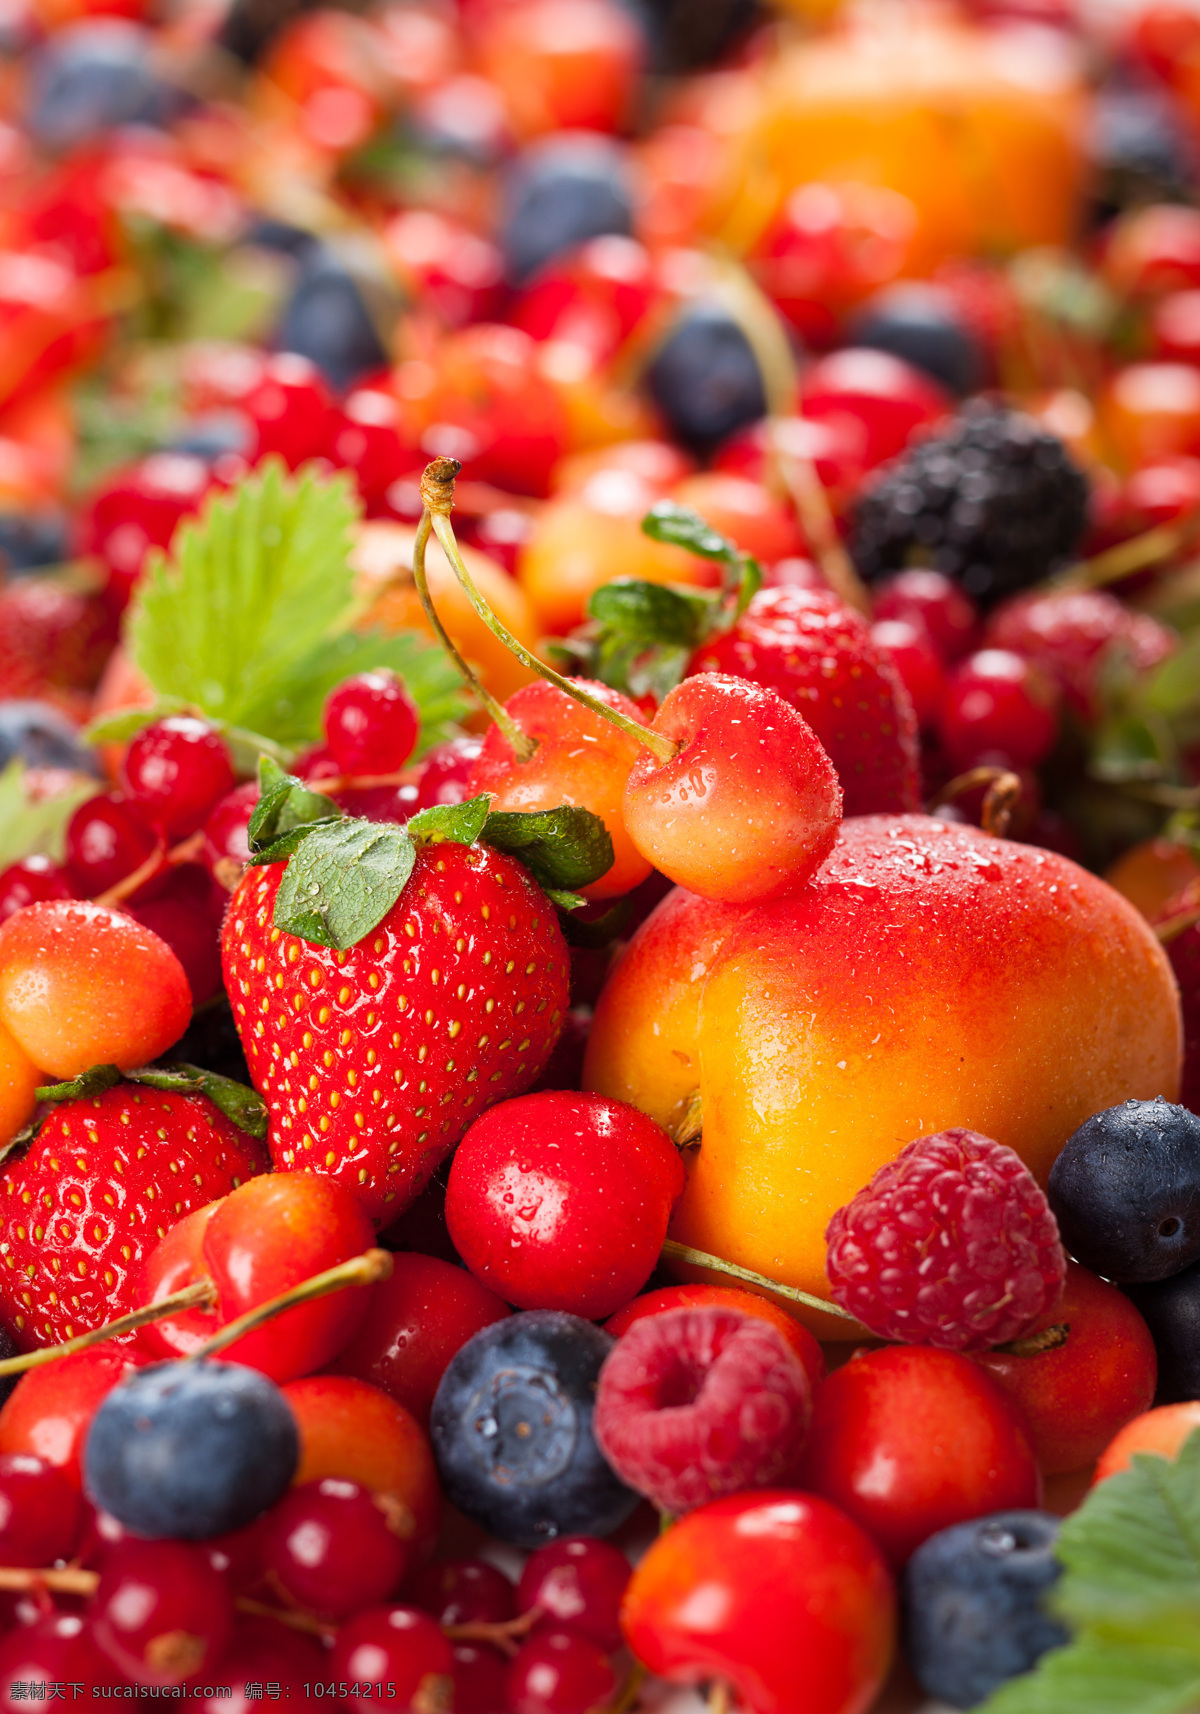 水果 背景 草莓 蓝莓 苹果 樱桃 水果图片 餐饮美食